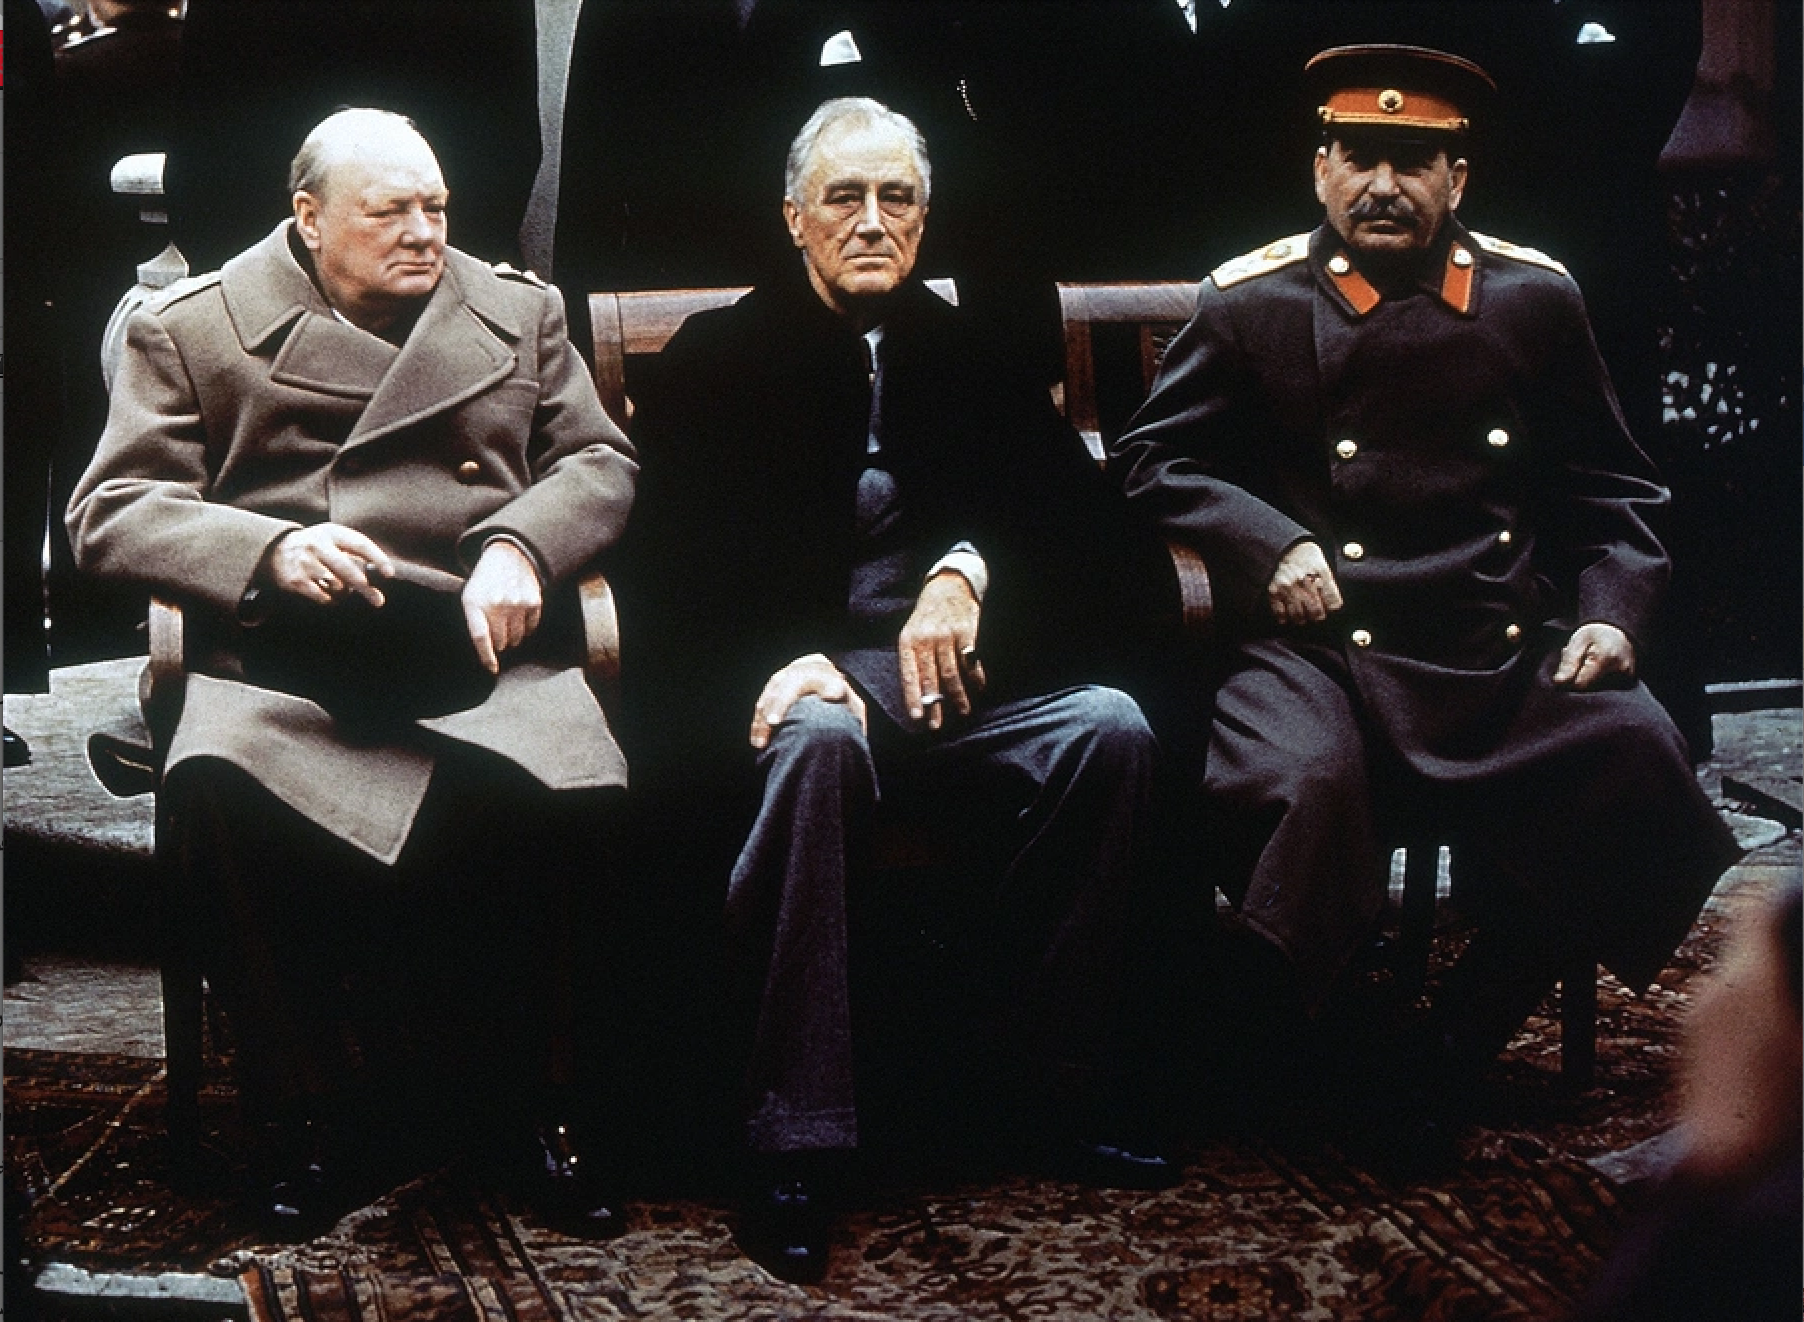  الزعيم السوفياتي جوزيف ستالين والرئيس الأميركي فرانكلين روزفلت ورئيس الوزراء البريطاني ونستون تشرشل بعد الحرب العالمية الثانية، فبراير 1945 (أ ب)